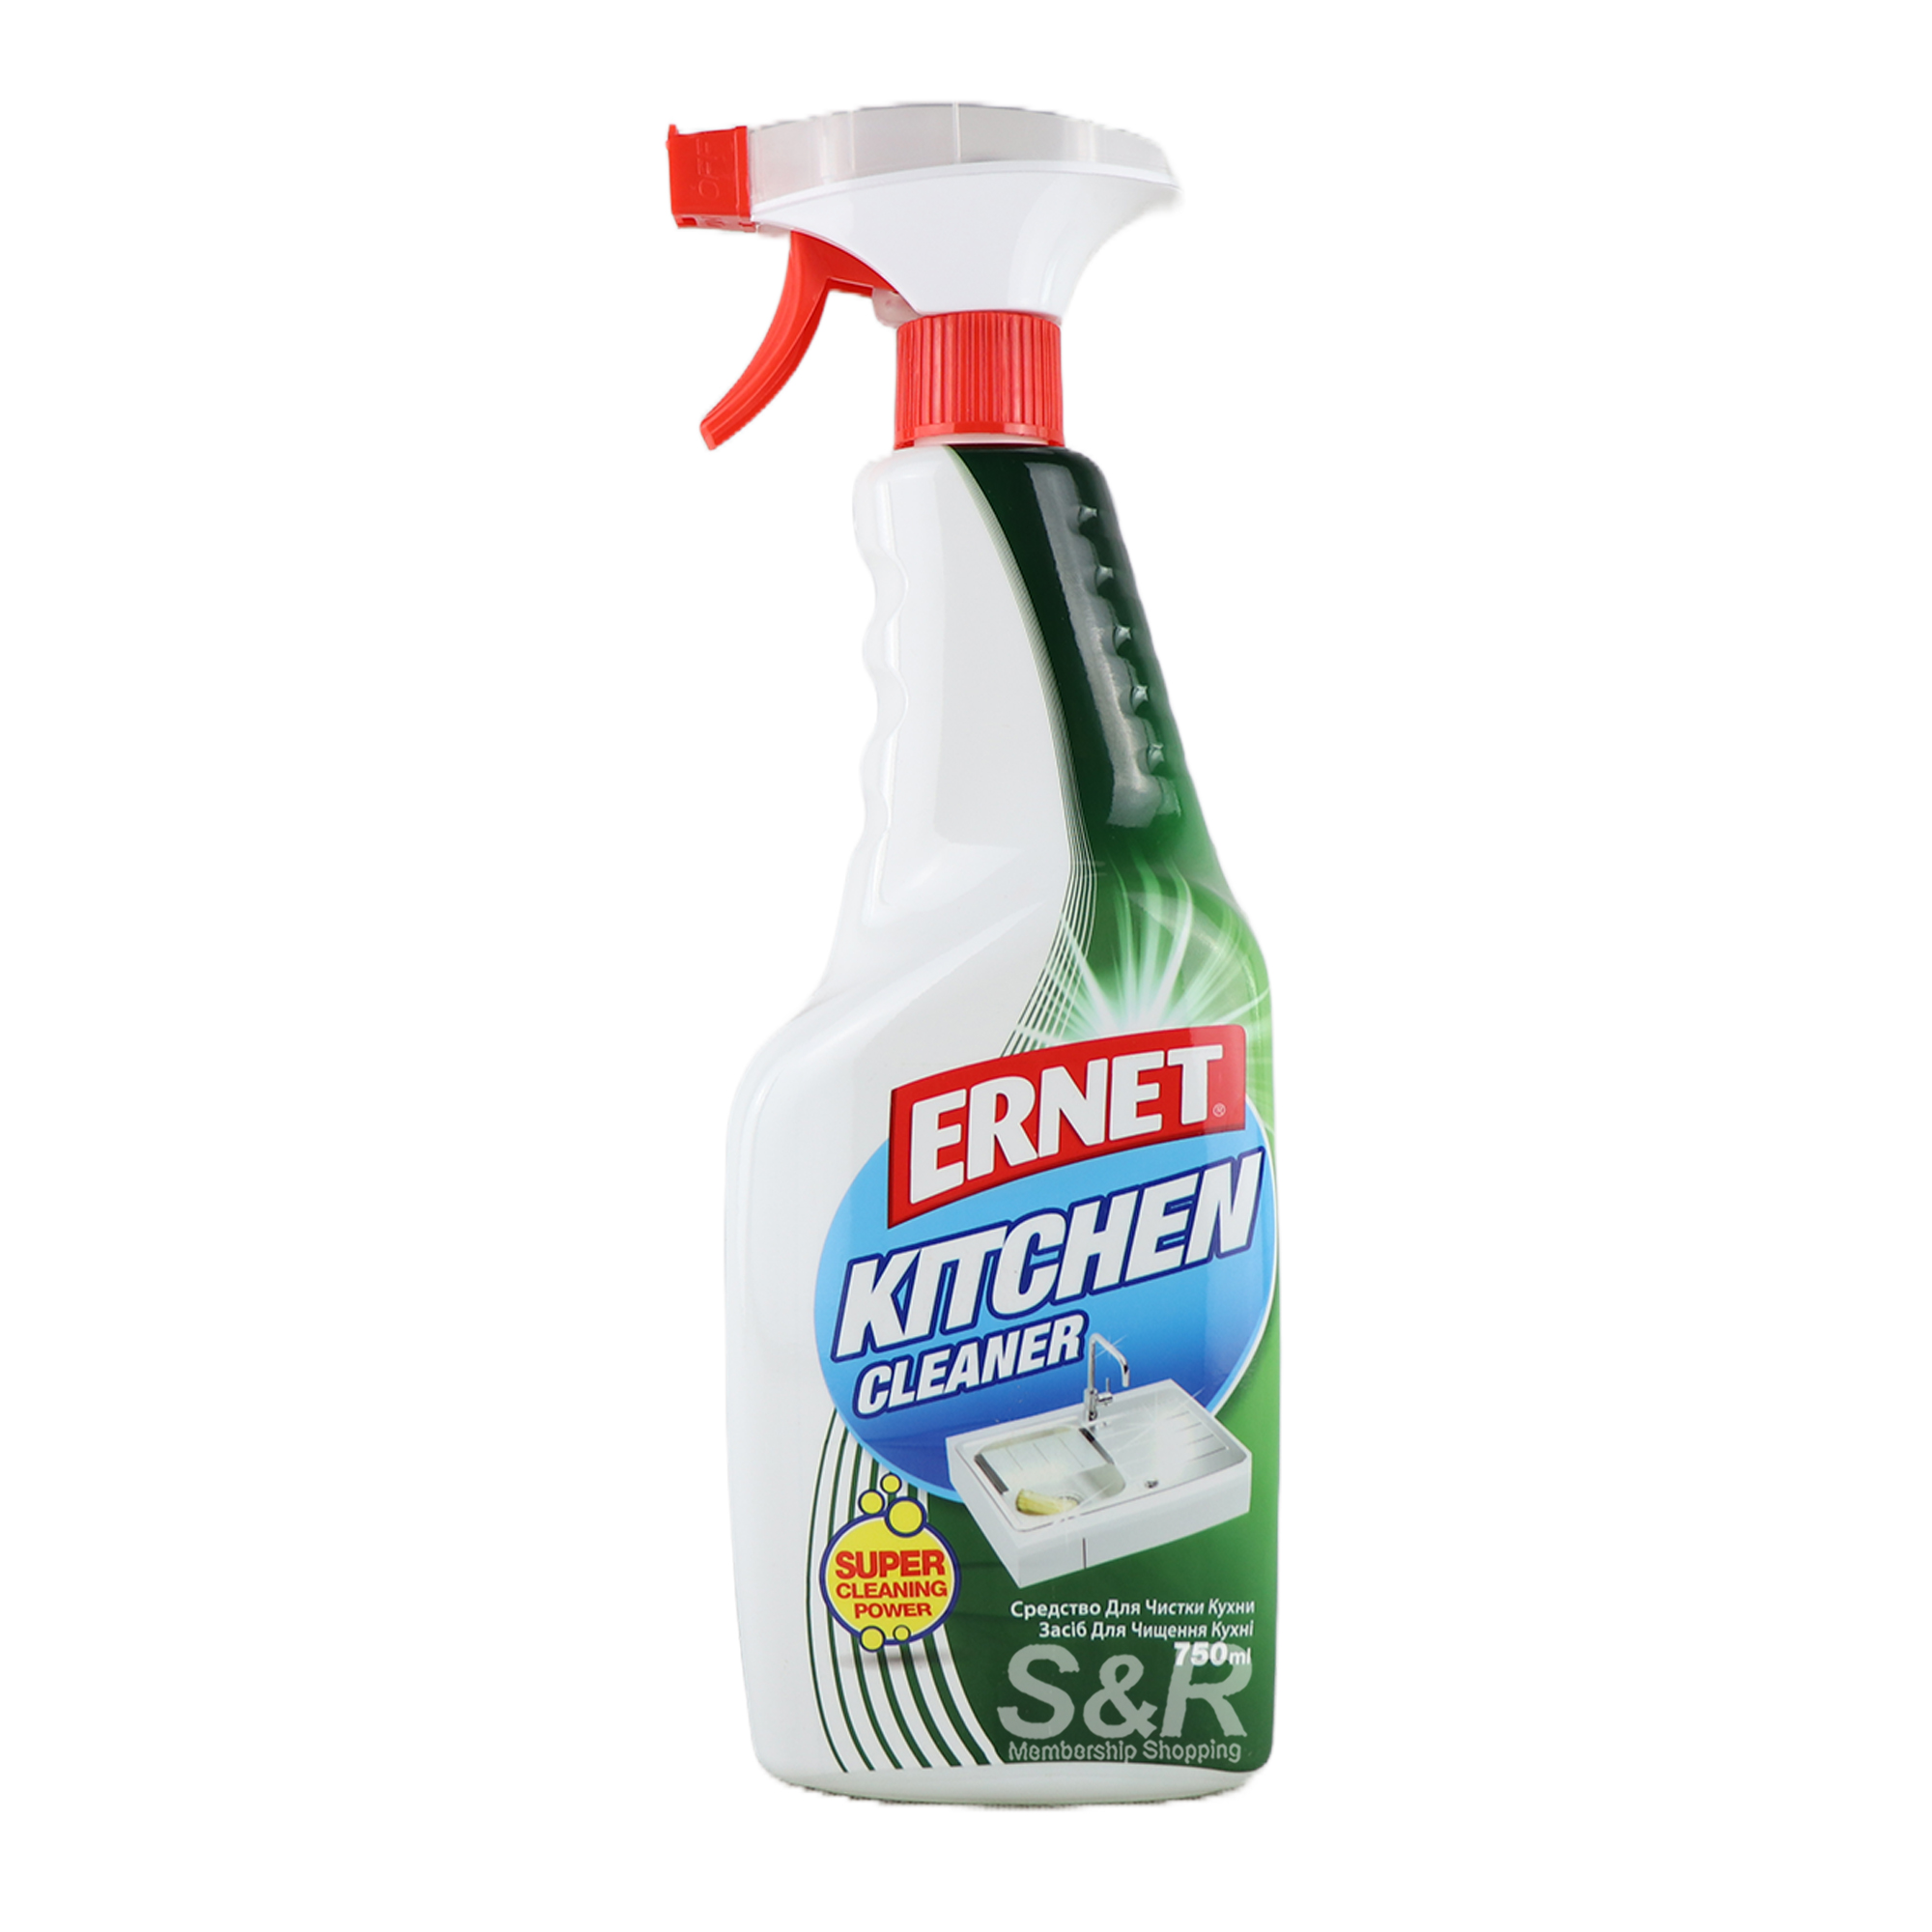 Ernet Kitchen Cleaner 750mL